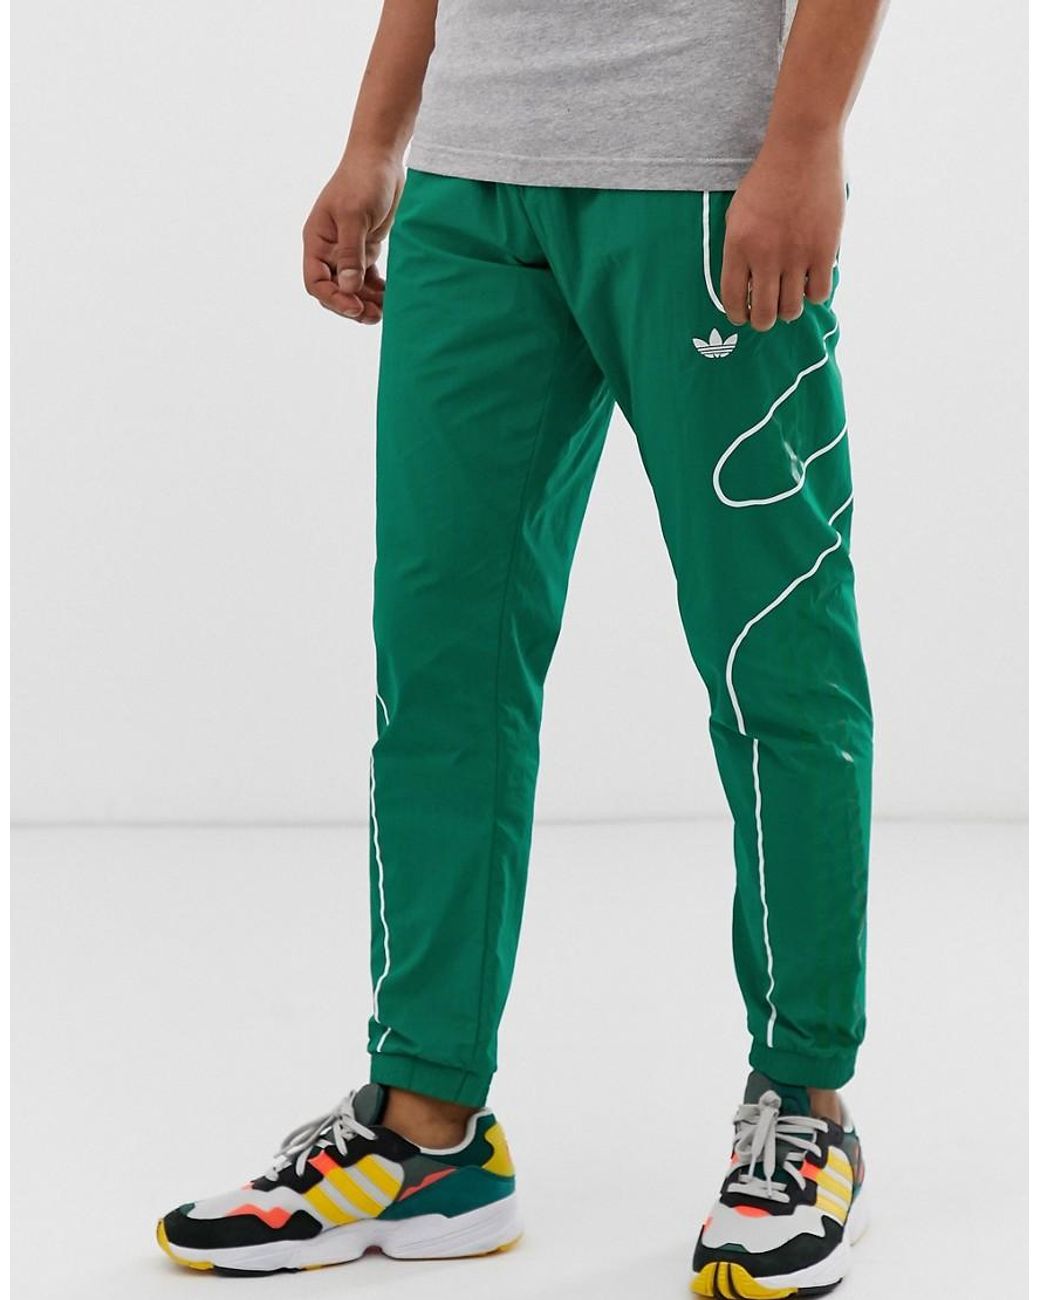 Адидас зеленый спортивный. Зеленые джоггеры adidas Originals. Штаны adidas Originals зеленые. Adidas Jogger зеленые. Adidas Originals Flamestrike зеленые.